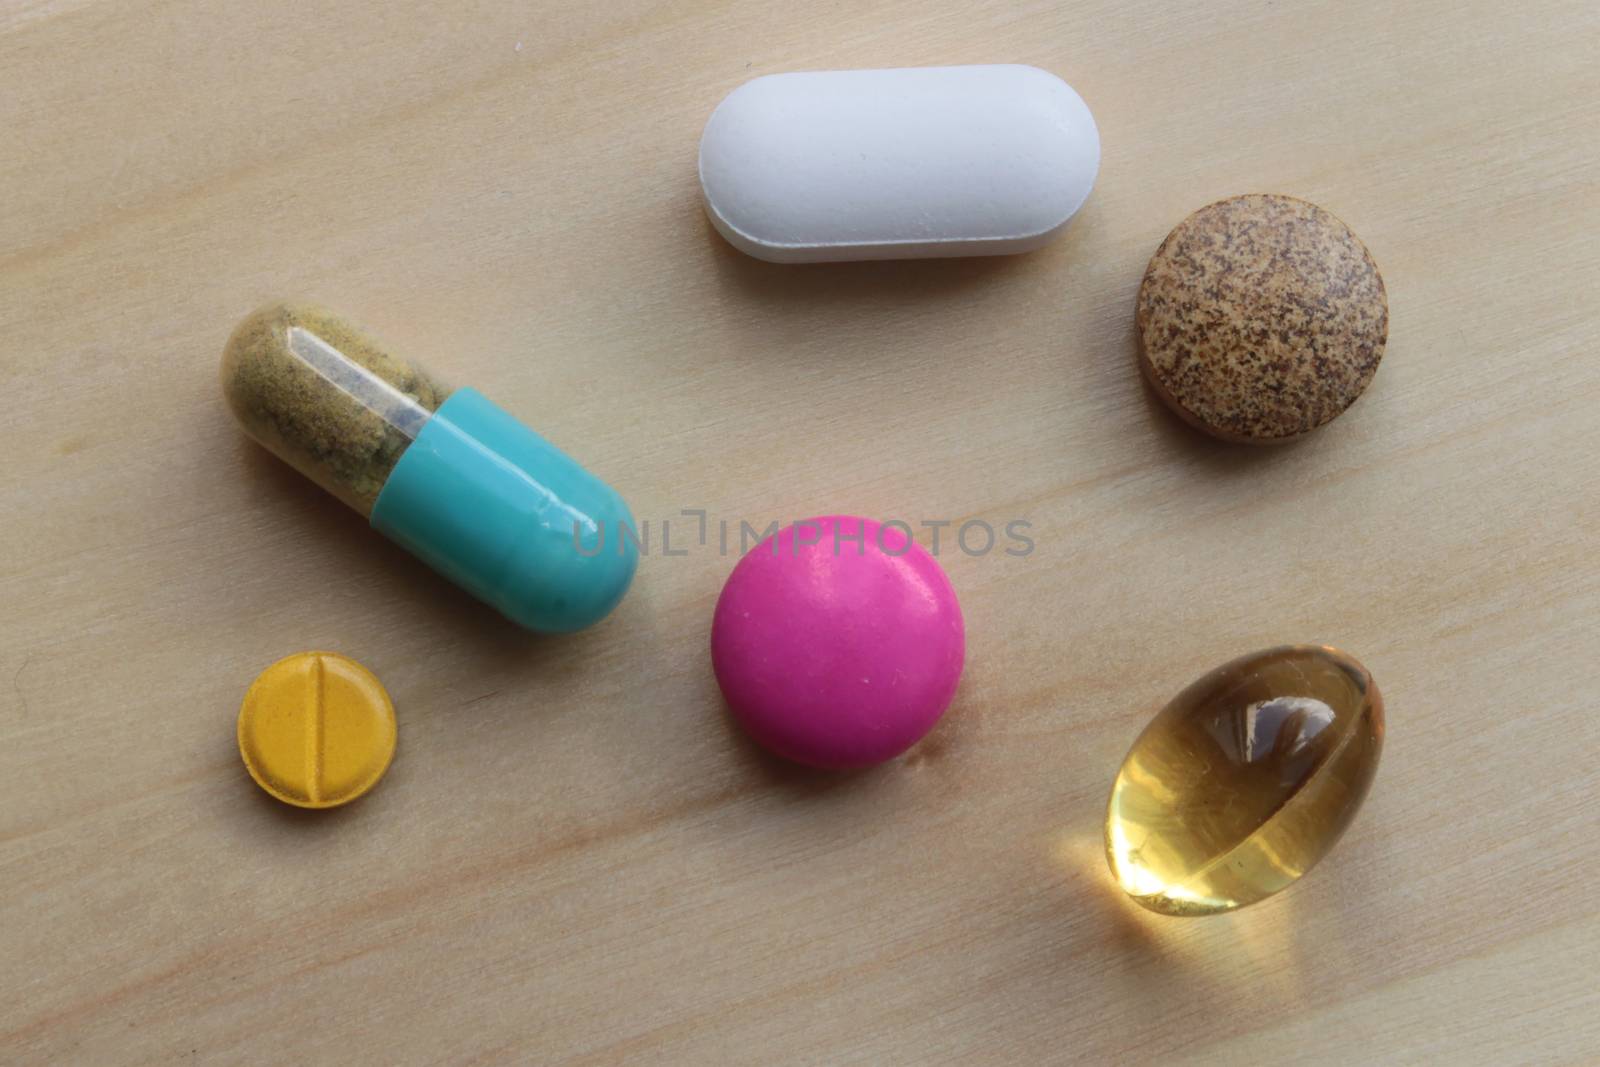 medicines